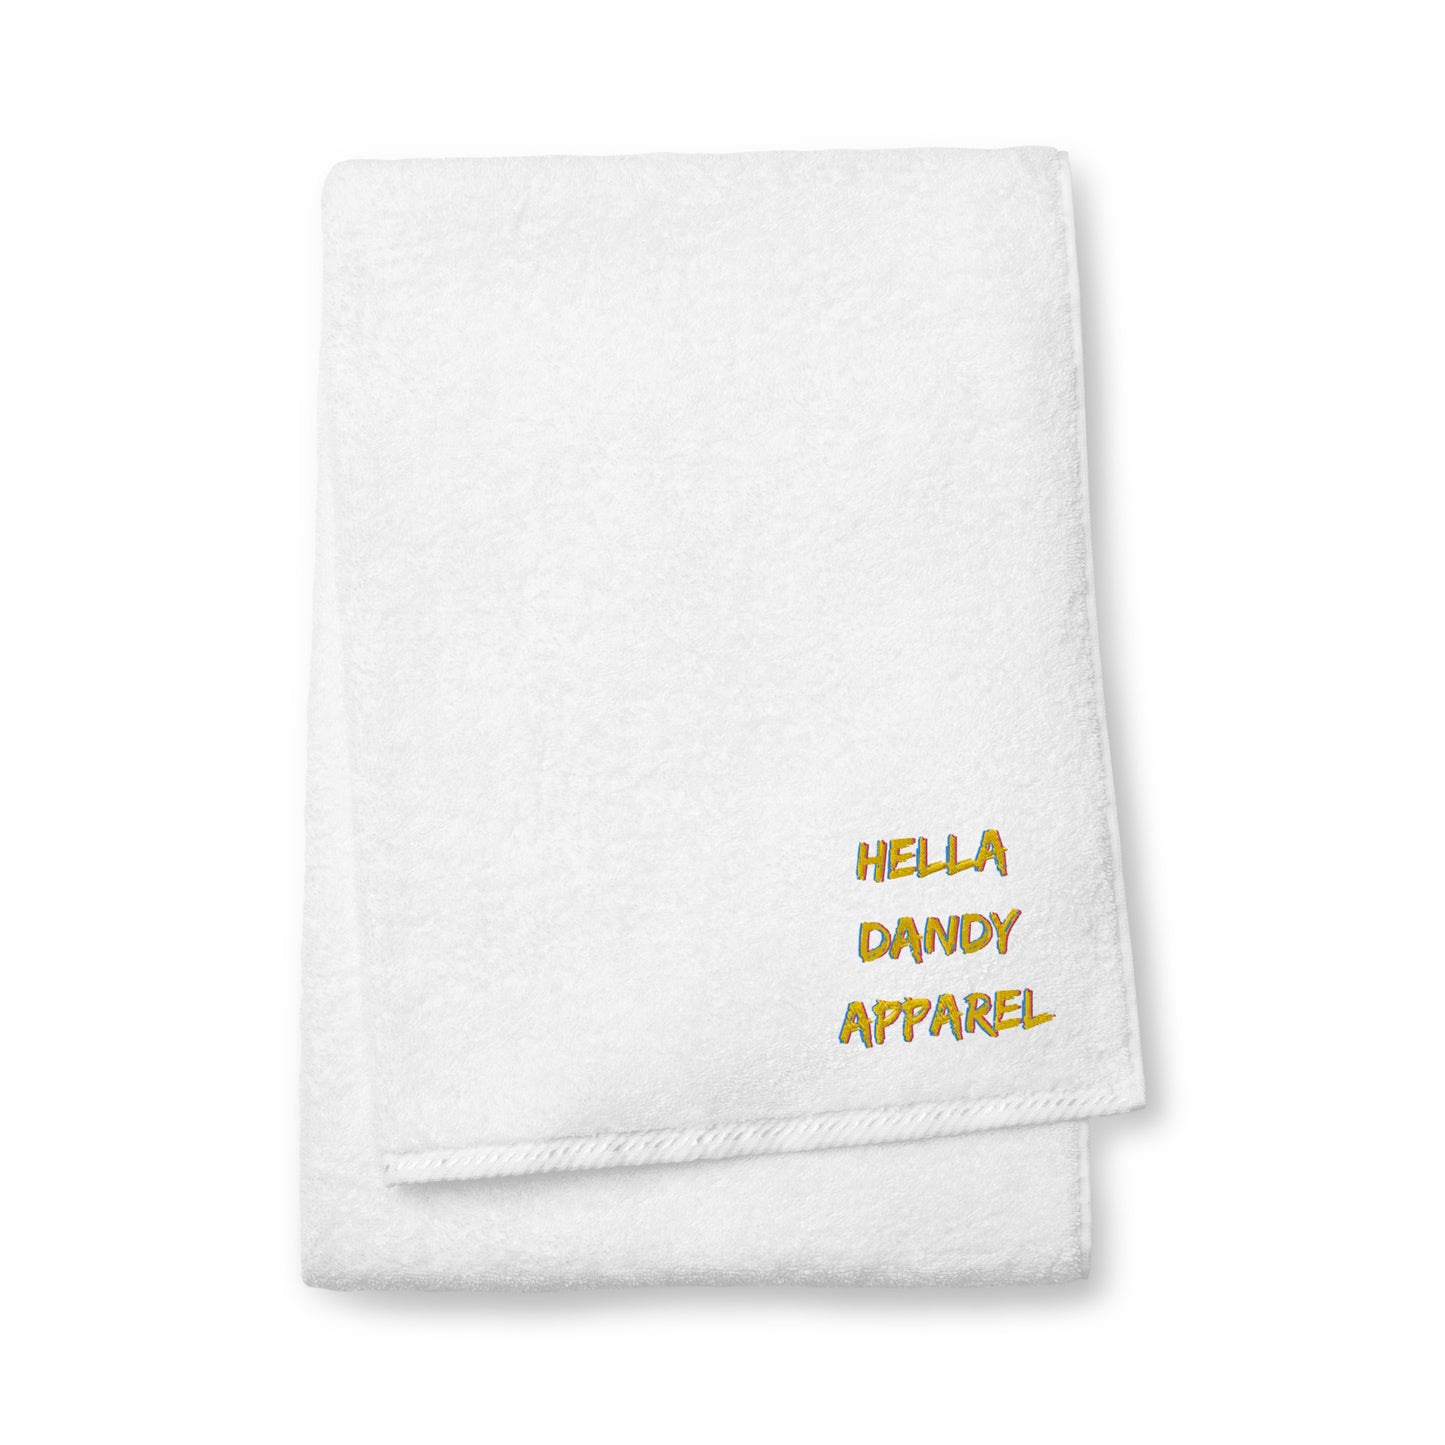 Hella Dandy Apparel Turkish cotton towel